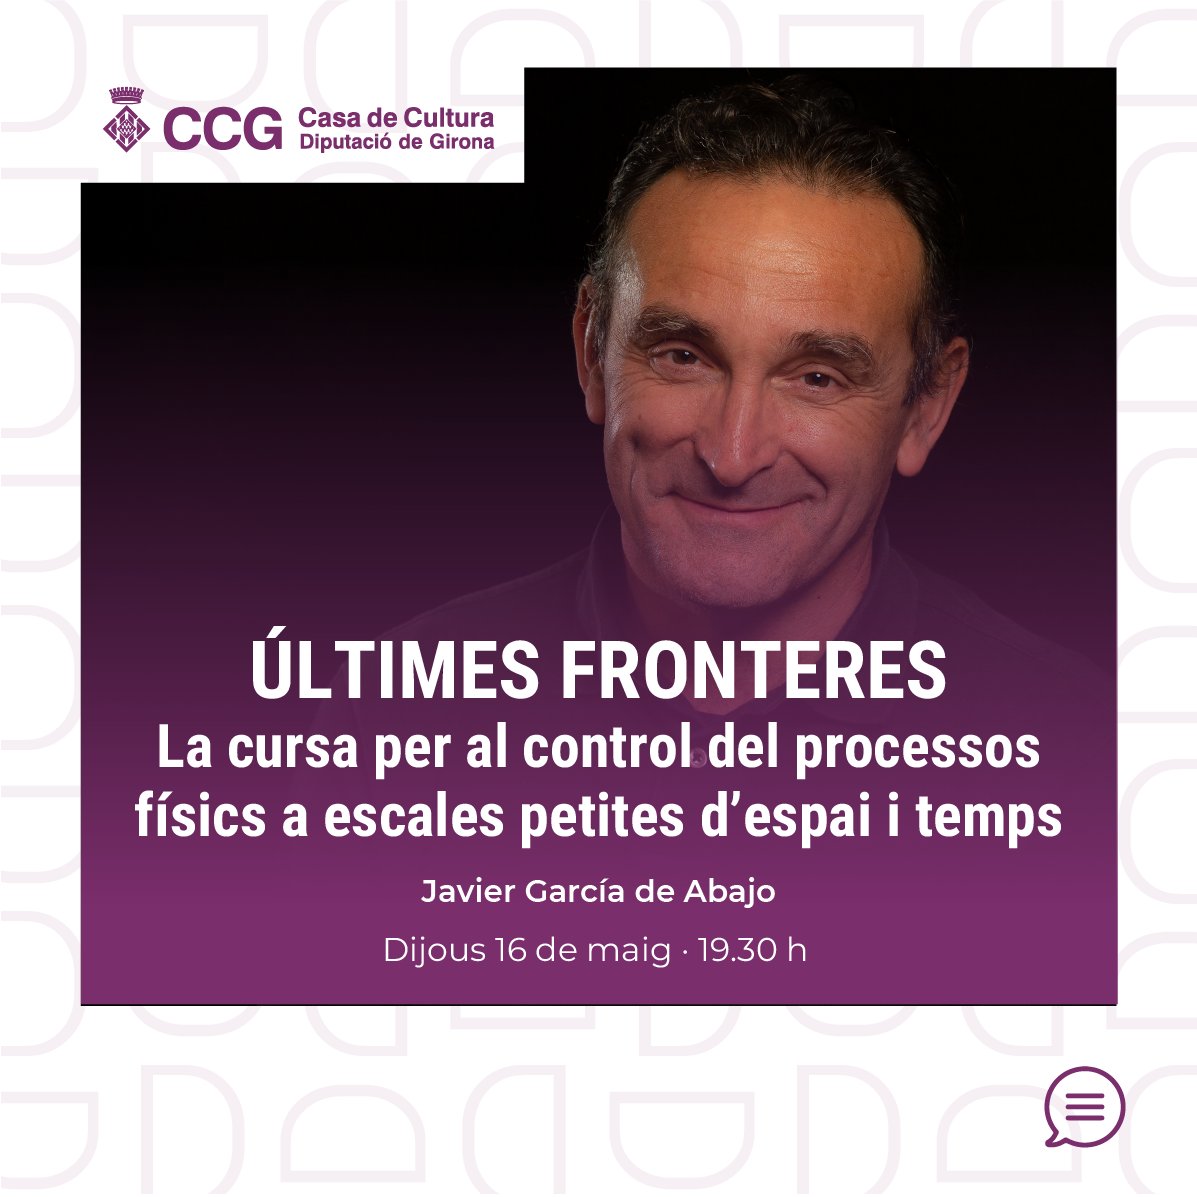 🧬Avui al cicle «Últimes fronteres» tindrà lloc la conferència «La cursa per al control del processos físics a escales petites d’espai i temps», amb Javier García de Abajo 👉tuit.cat/6Ql8u ⚙️@LluisSantaloUdG